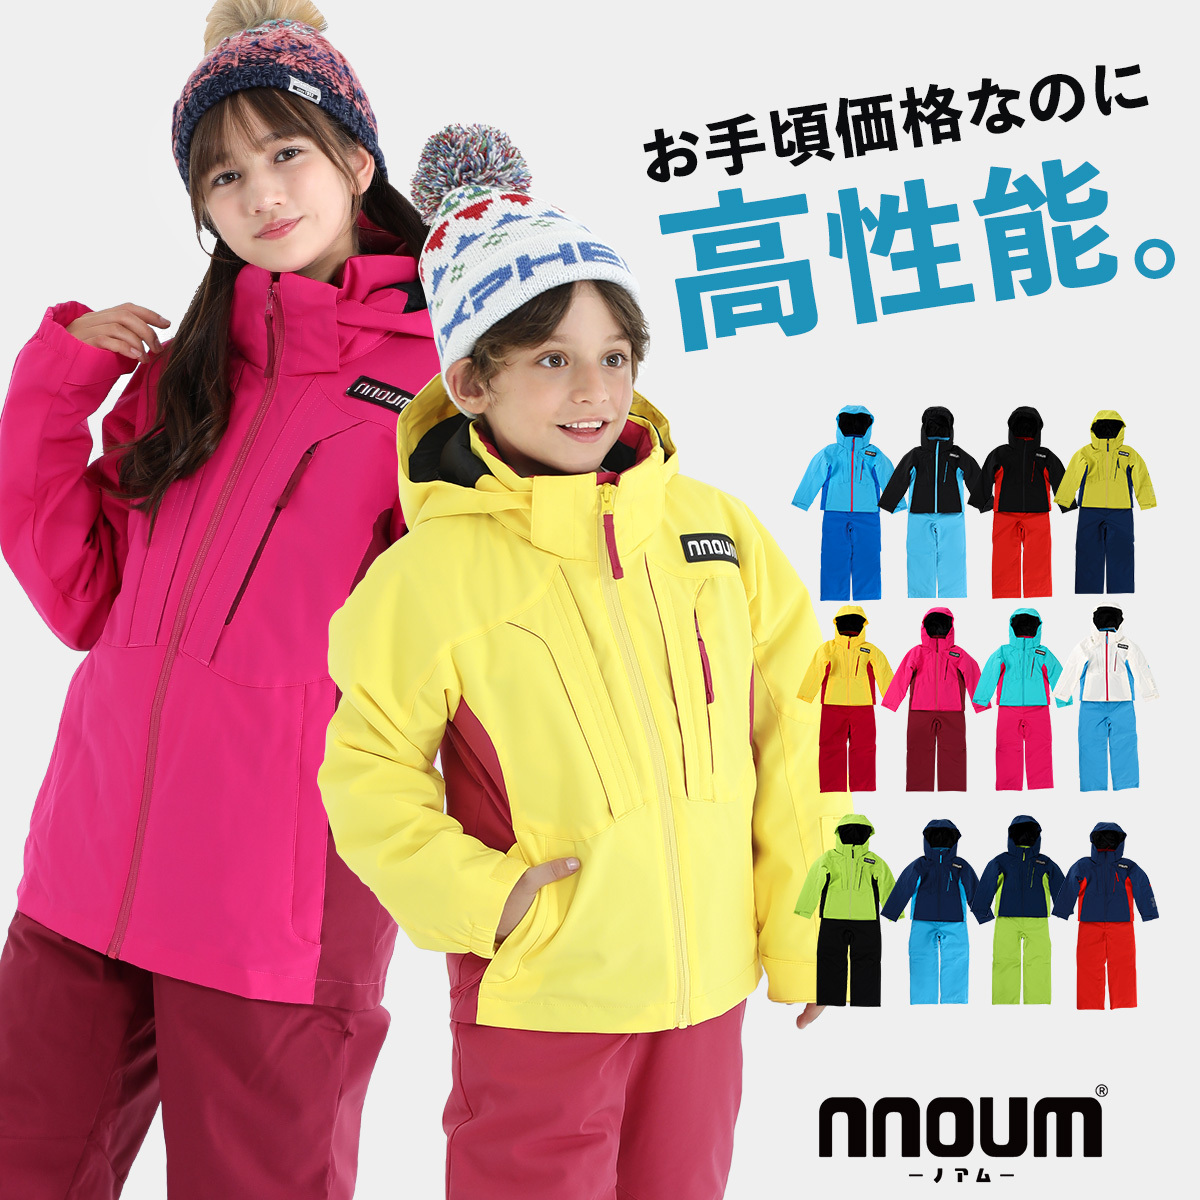  лыжи одежда Kids Junior верх и низ в комплекте зимняя одежда одежда для сноуборда жакет NNOUM Noah m детский мужчина девочка размер регулировка 120 130 140 150 160